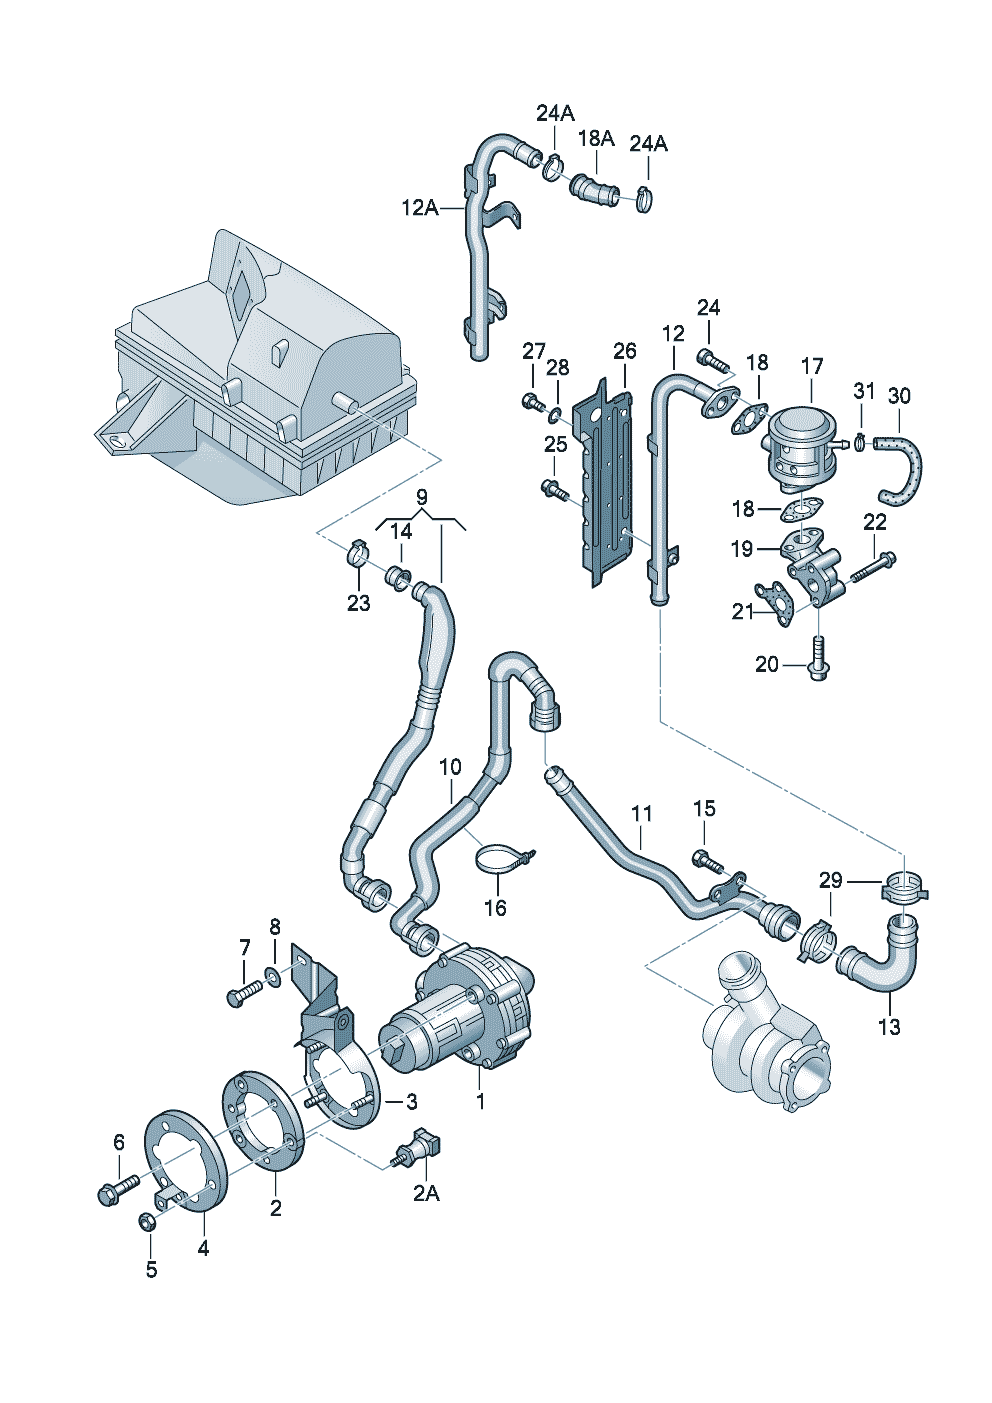 Secondary air pump 1.8ltr. - Audi A4/Avant - a4